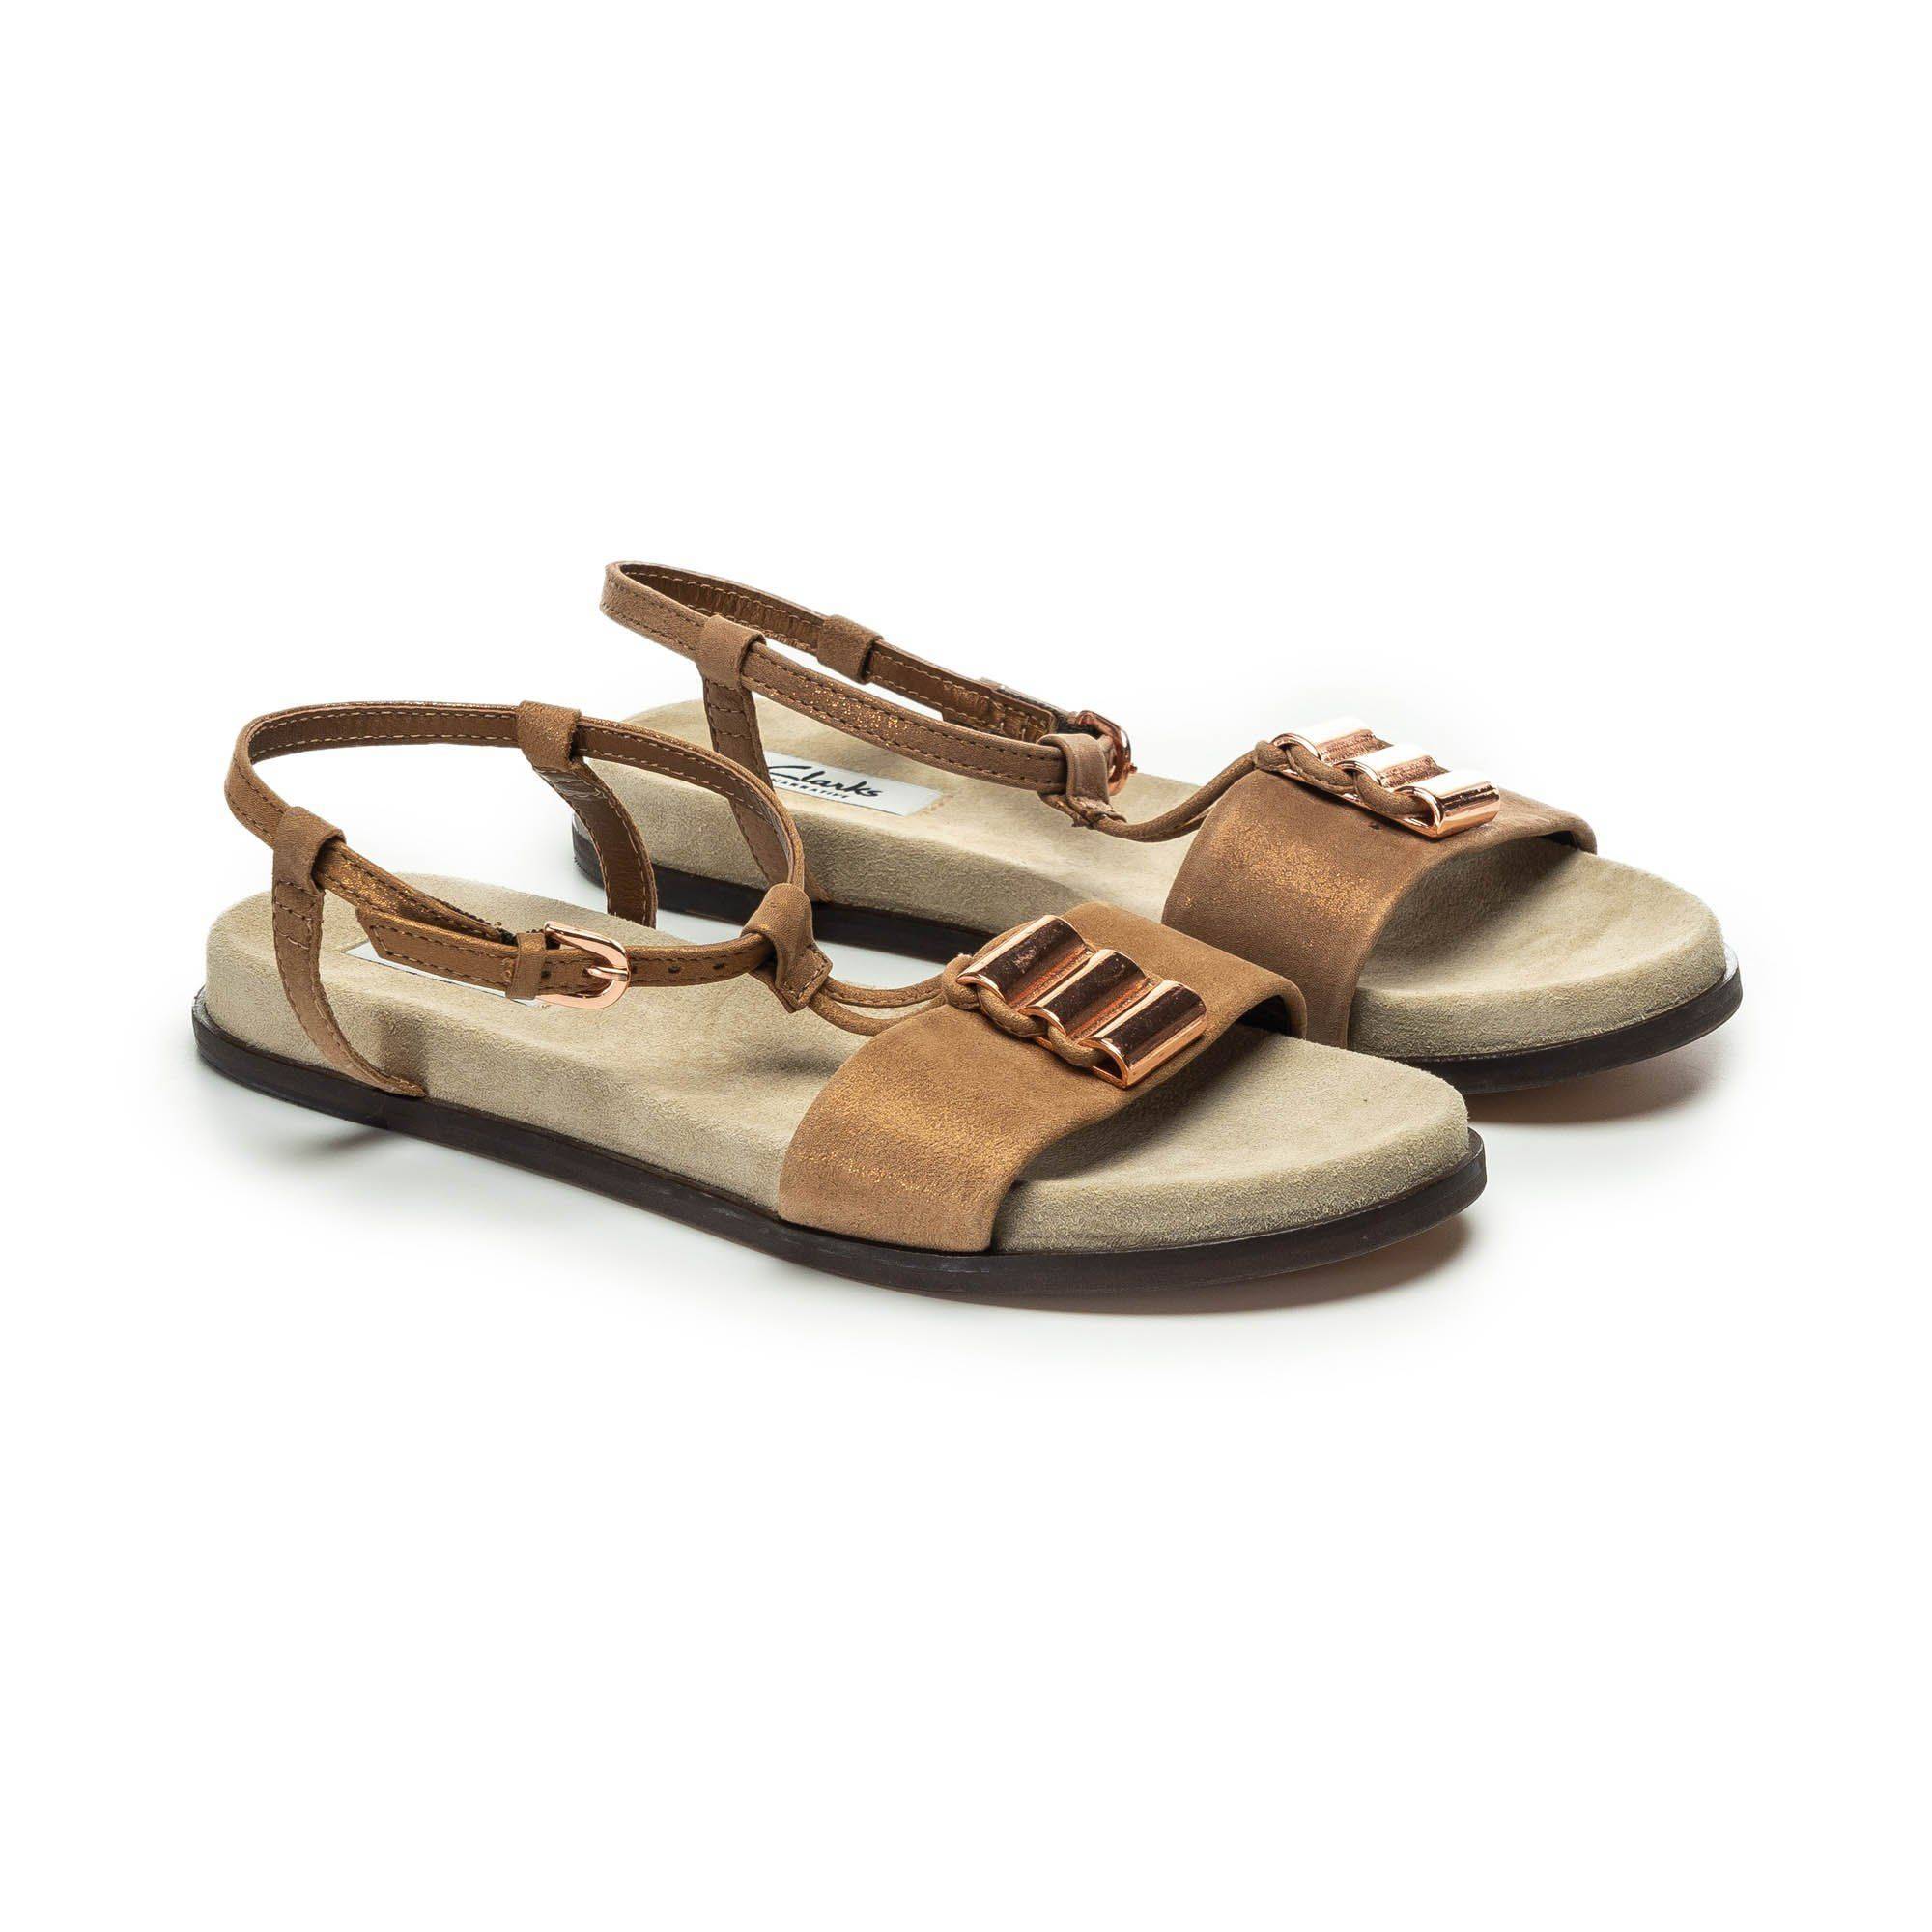 Купить Женские сандалии Clarks, цвет золотой, Модель: Agean Cool, арт: 26125853, цена от 6190 Официальном интернет-магазине обуви и аксессуаров - SOHO